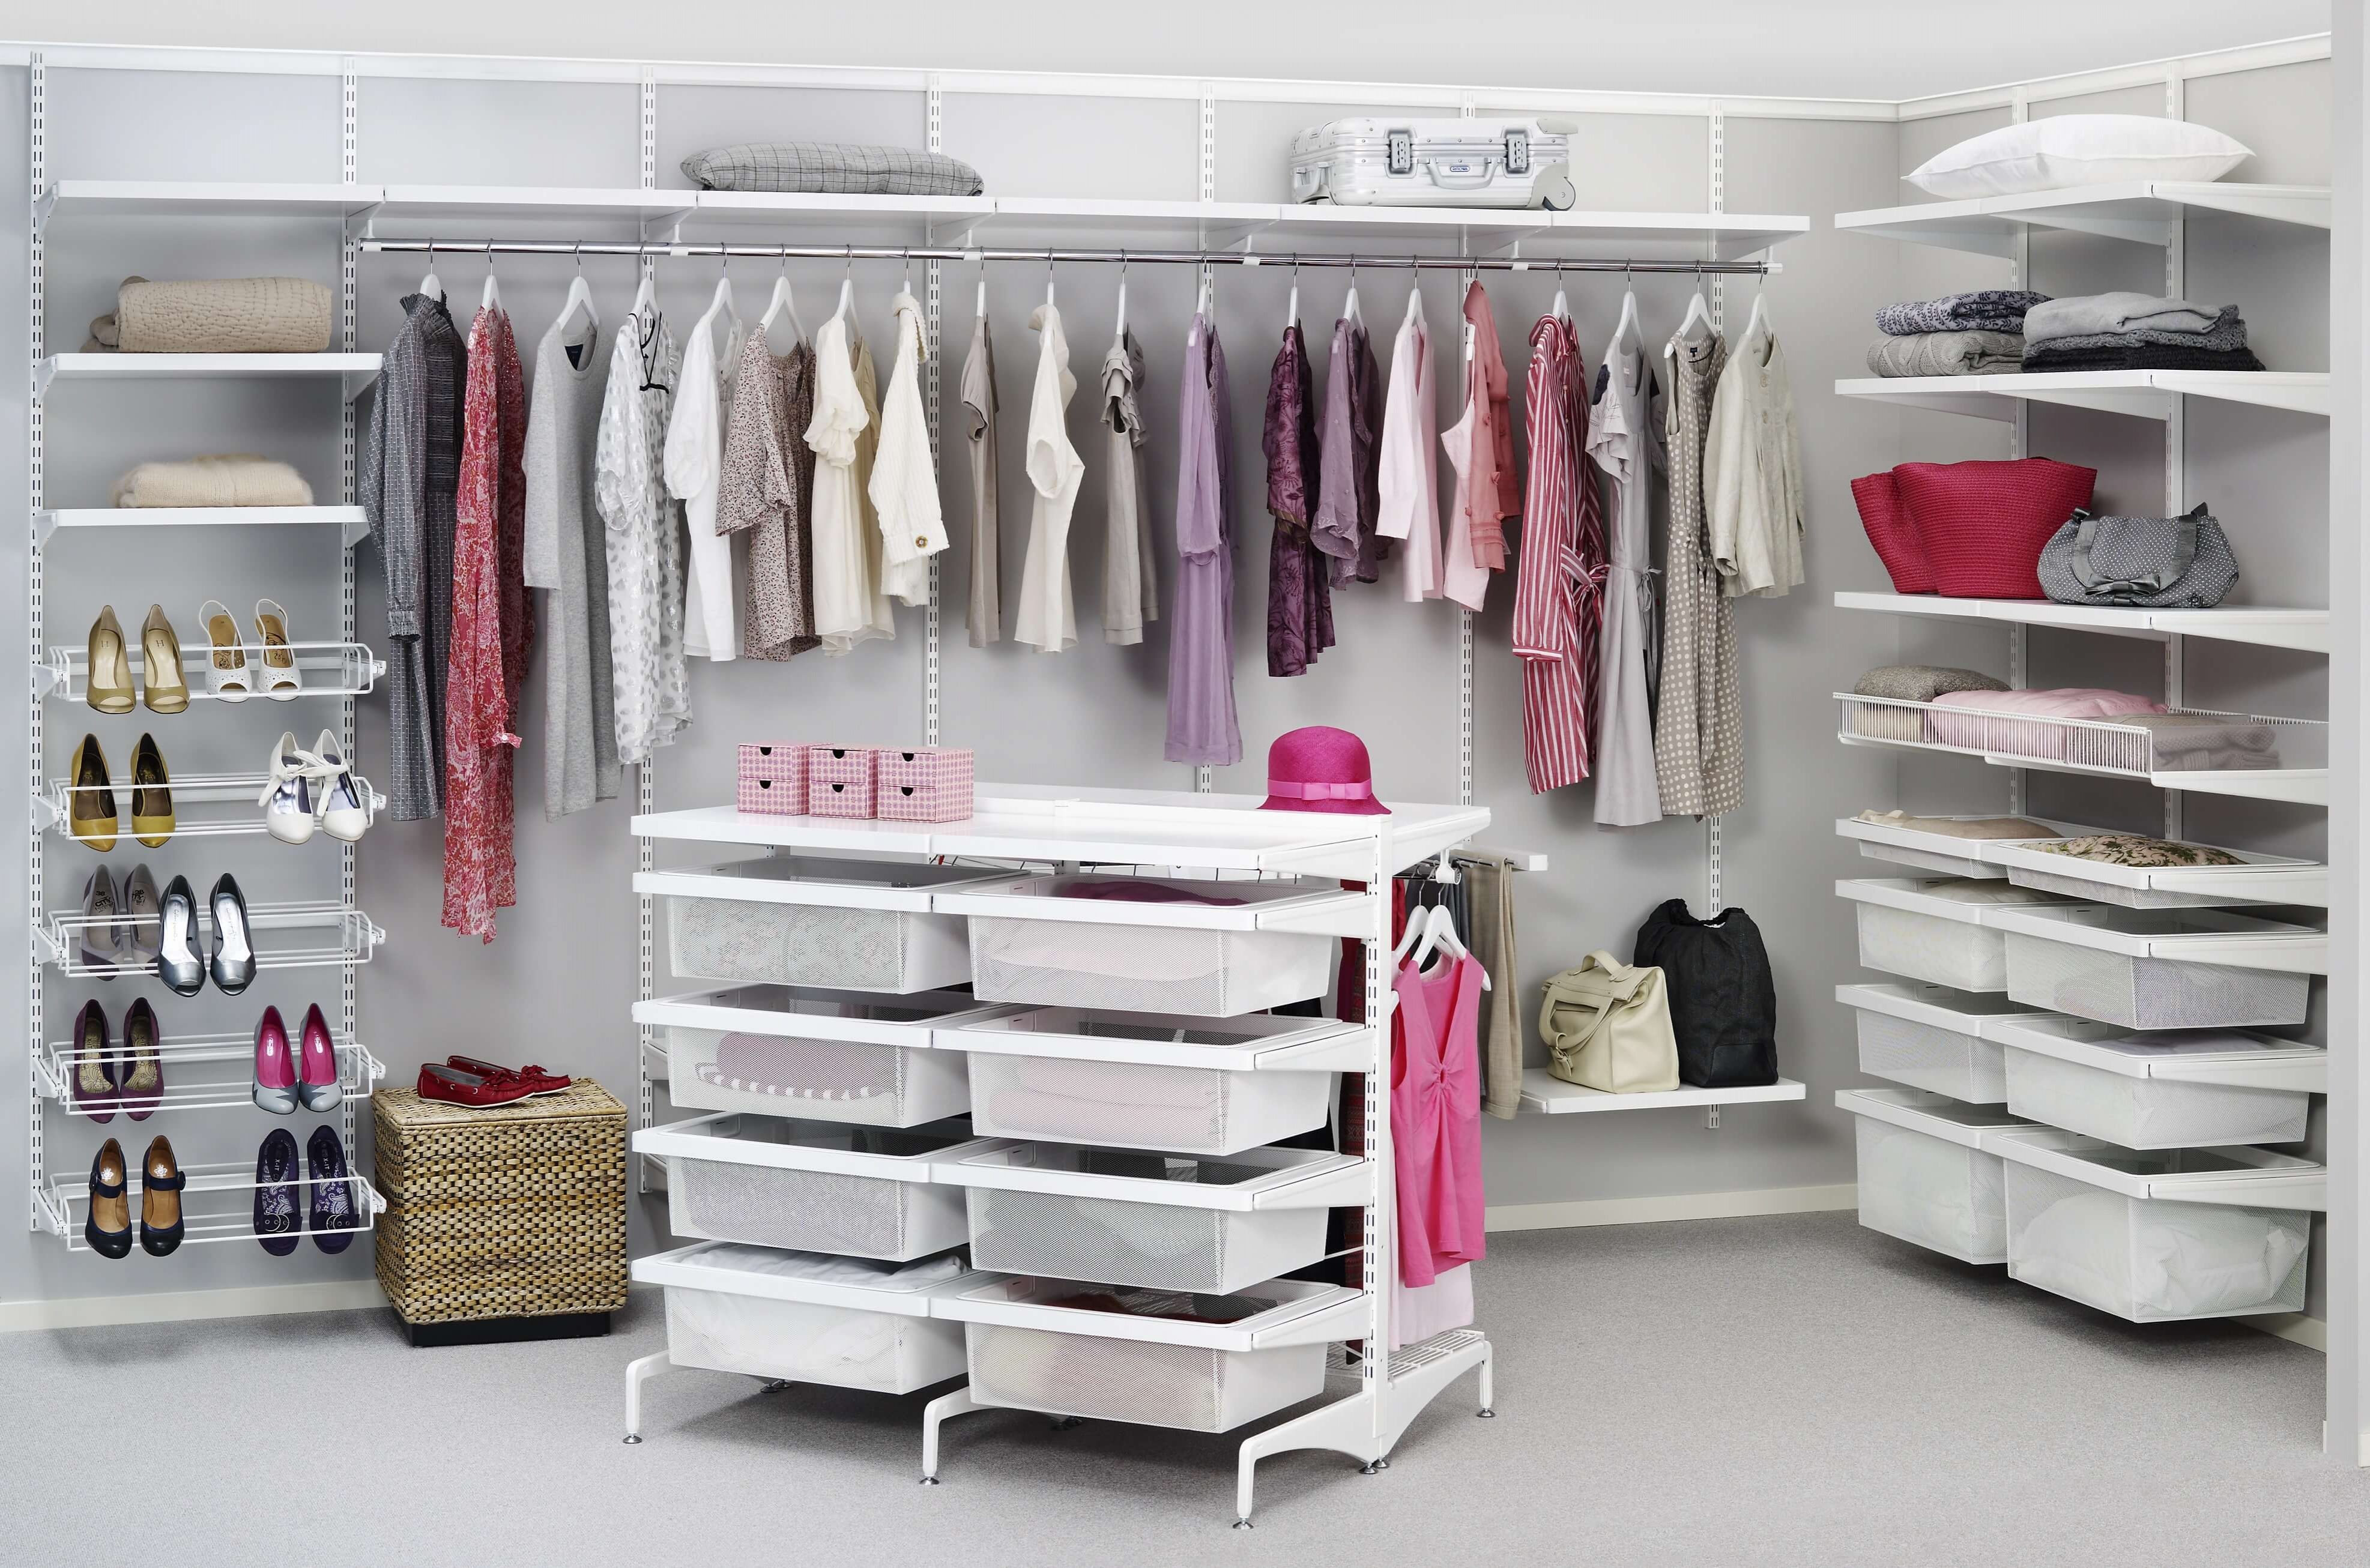 Организовать гардероб. Elfa гардеробные системы. Шведская гардеробная система Elfa. Гардеробная система Ларвидж. Сетчатые гардеробные аристо.